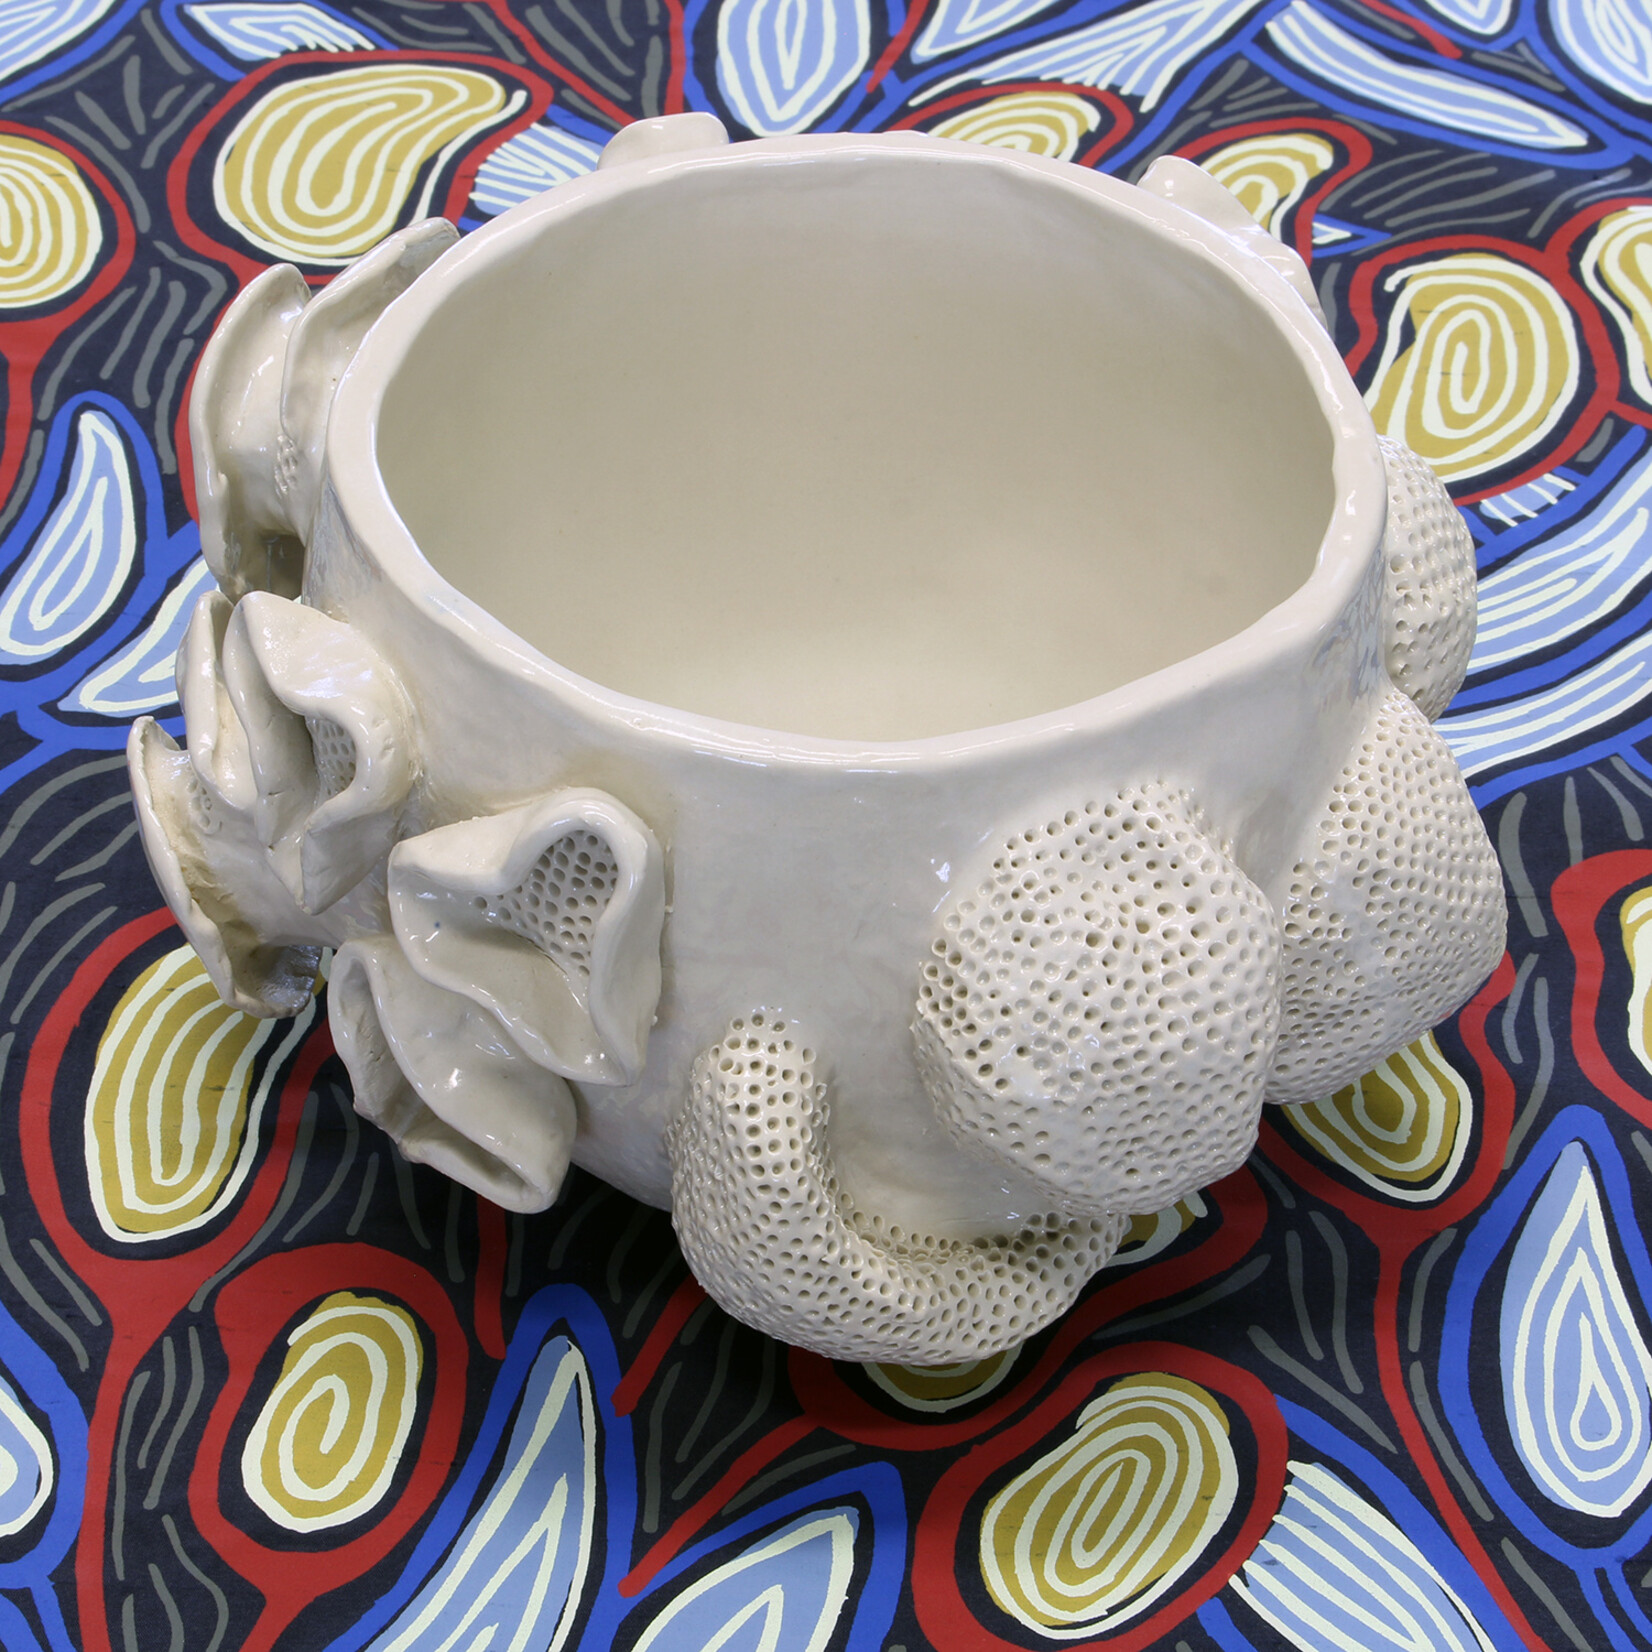 Monique Burkhead, no.6 Octopus’s Garden series | Ceramic